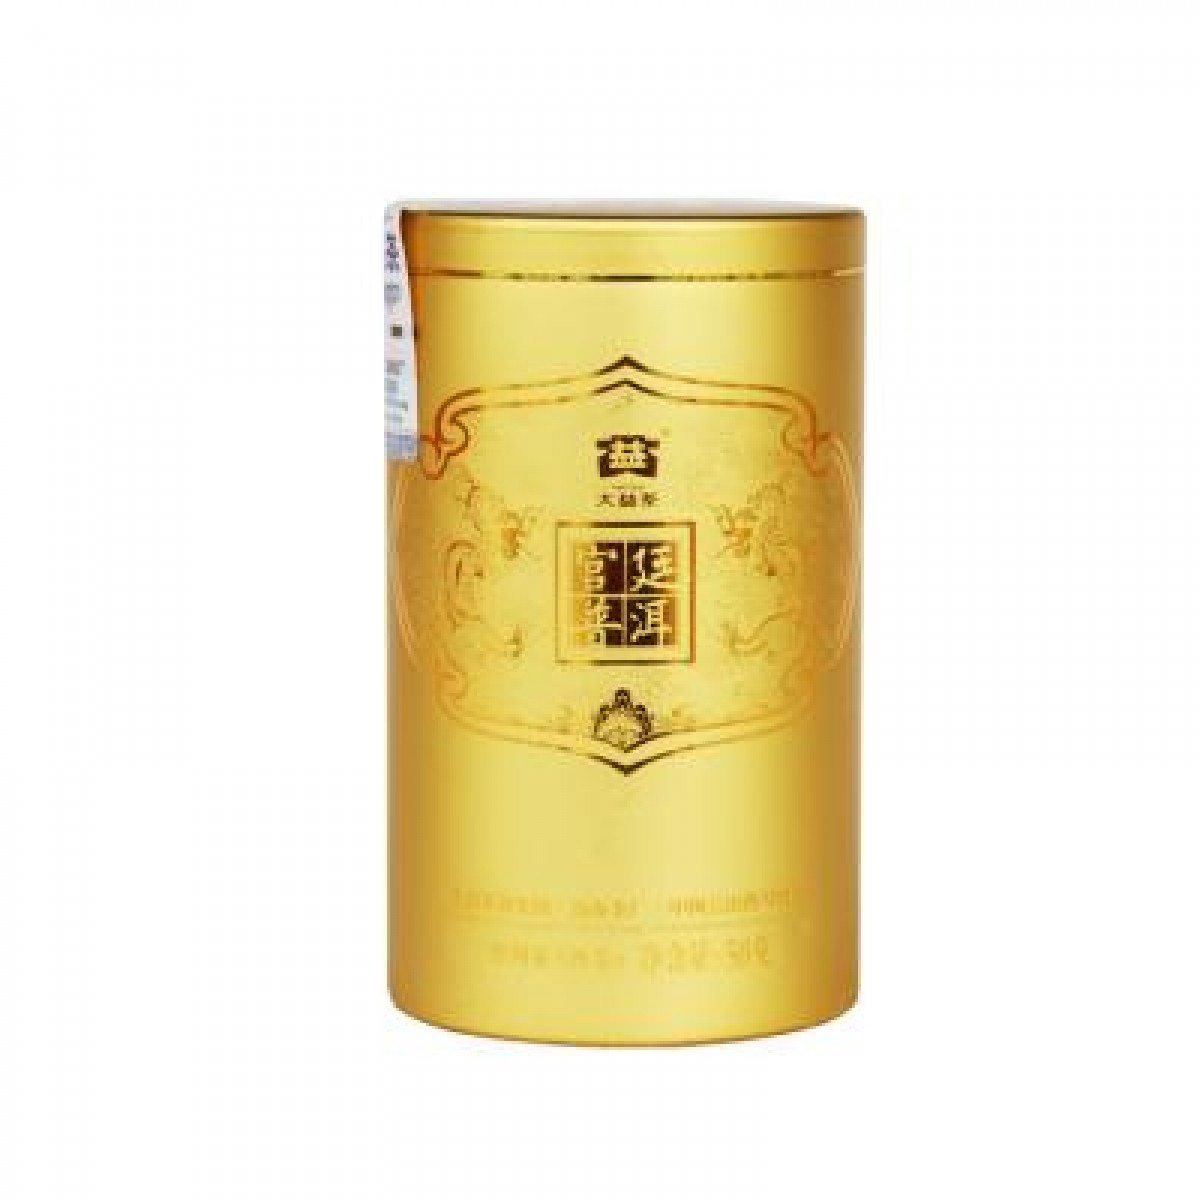 【大益茶】普洱茶熟茶宫廷普洱散茶(1001批) 50g/罐ชาผู่เอ๋อสุกต้าอี้ รุ่น